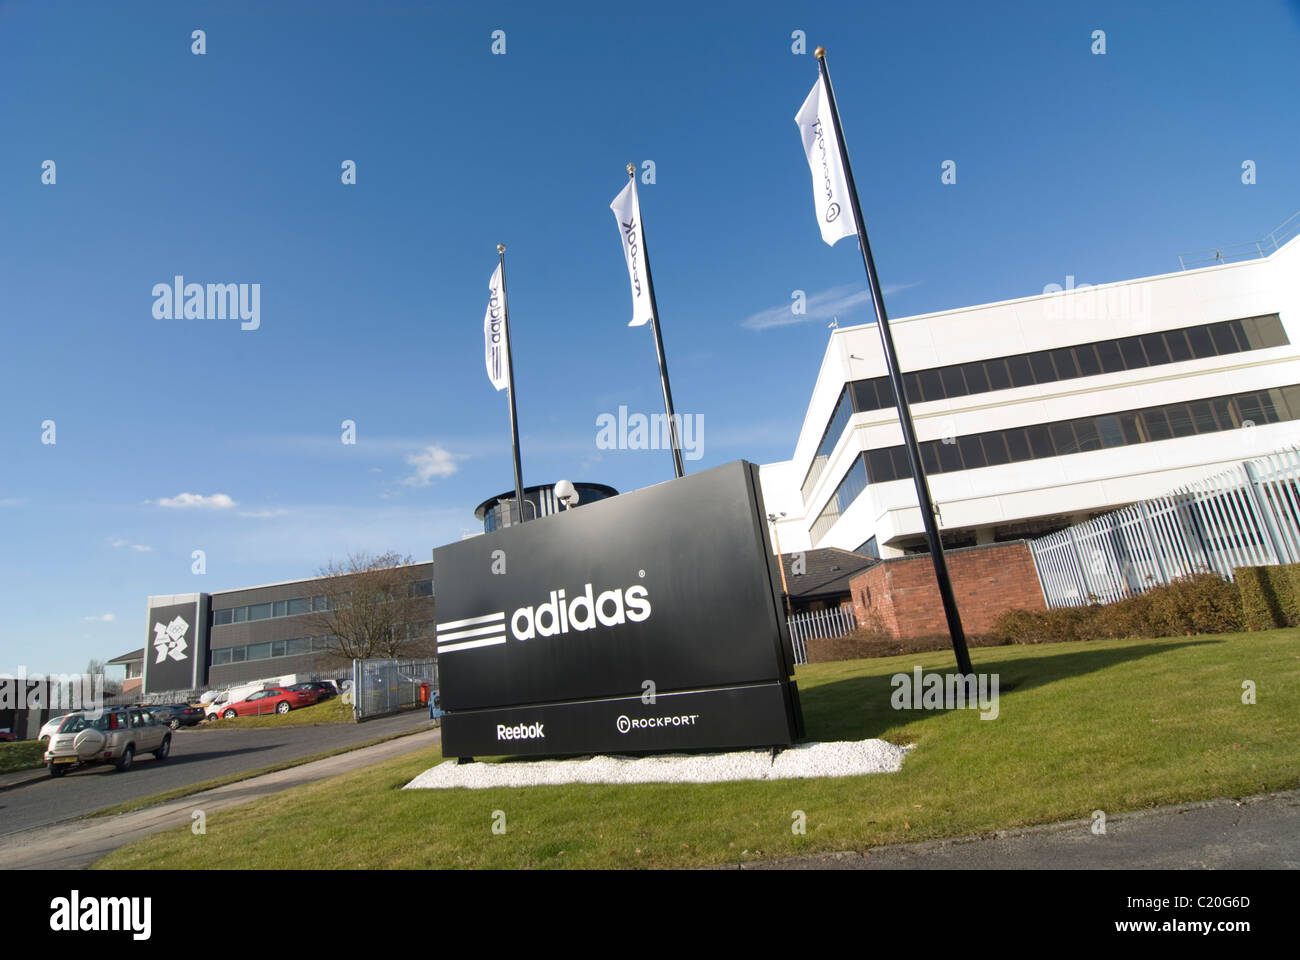 adidas uk stockport